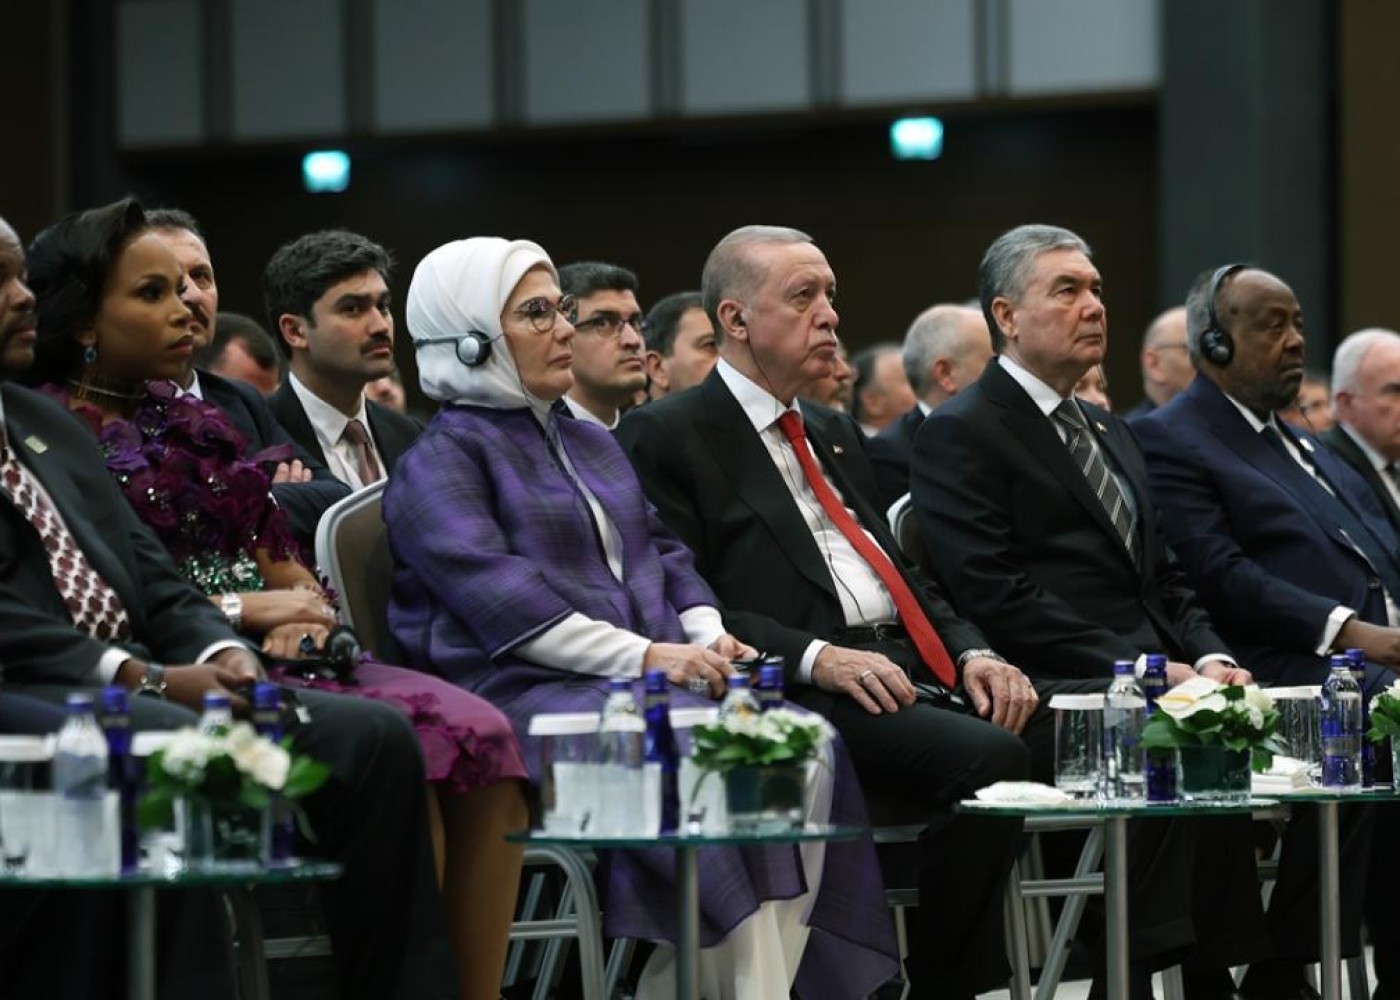 YAP nümayəndə heyəti III Antalya Diplomatiya Forumunda iştirak EDİR